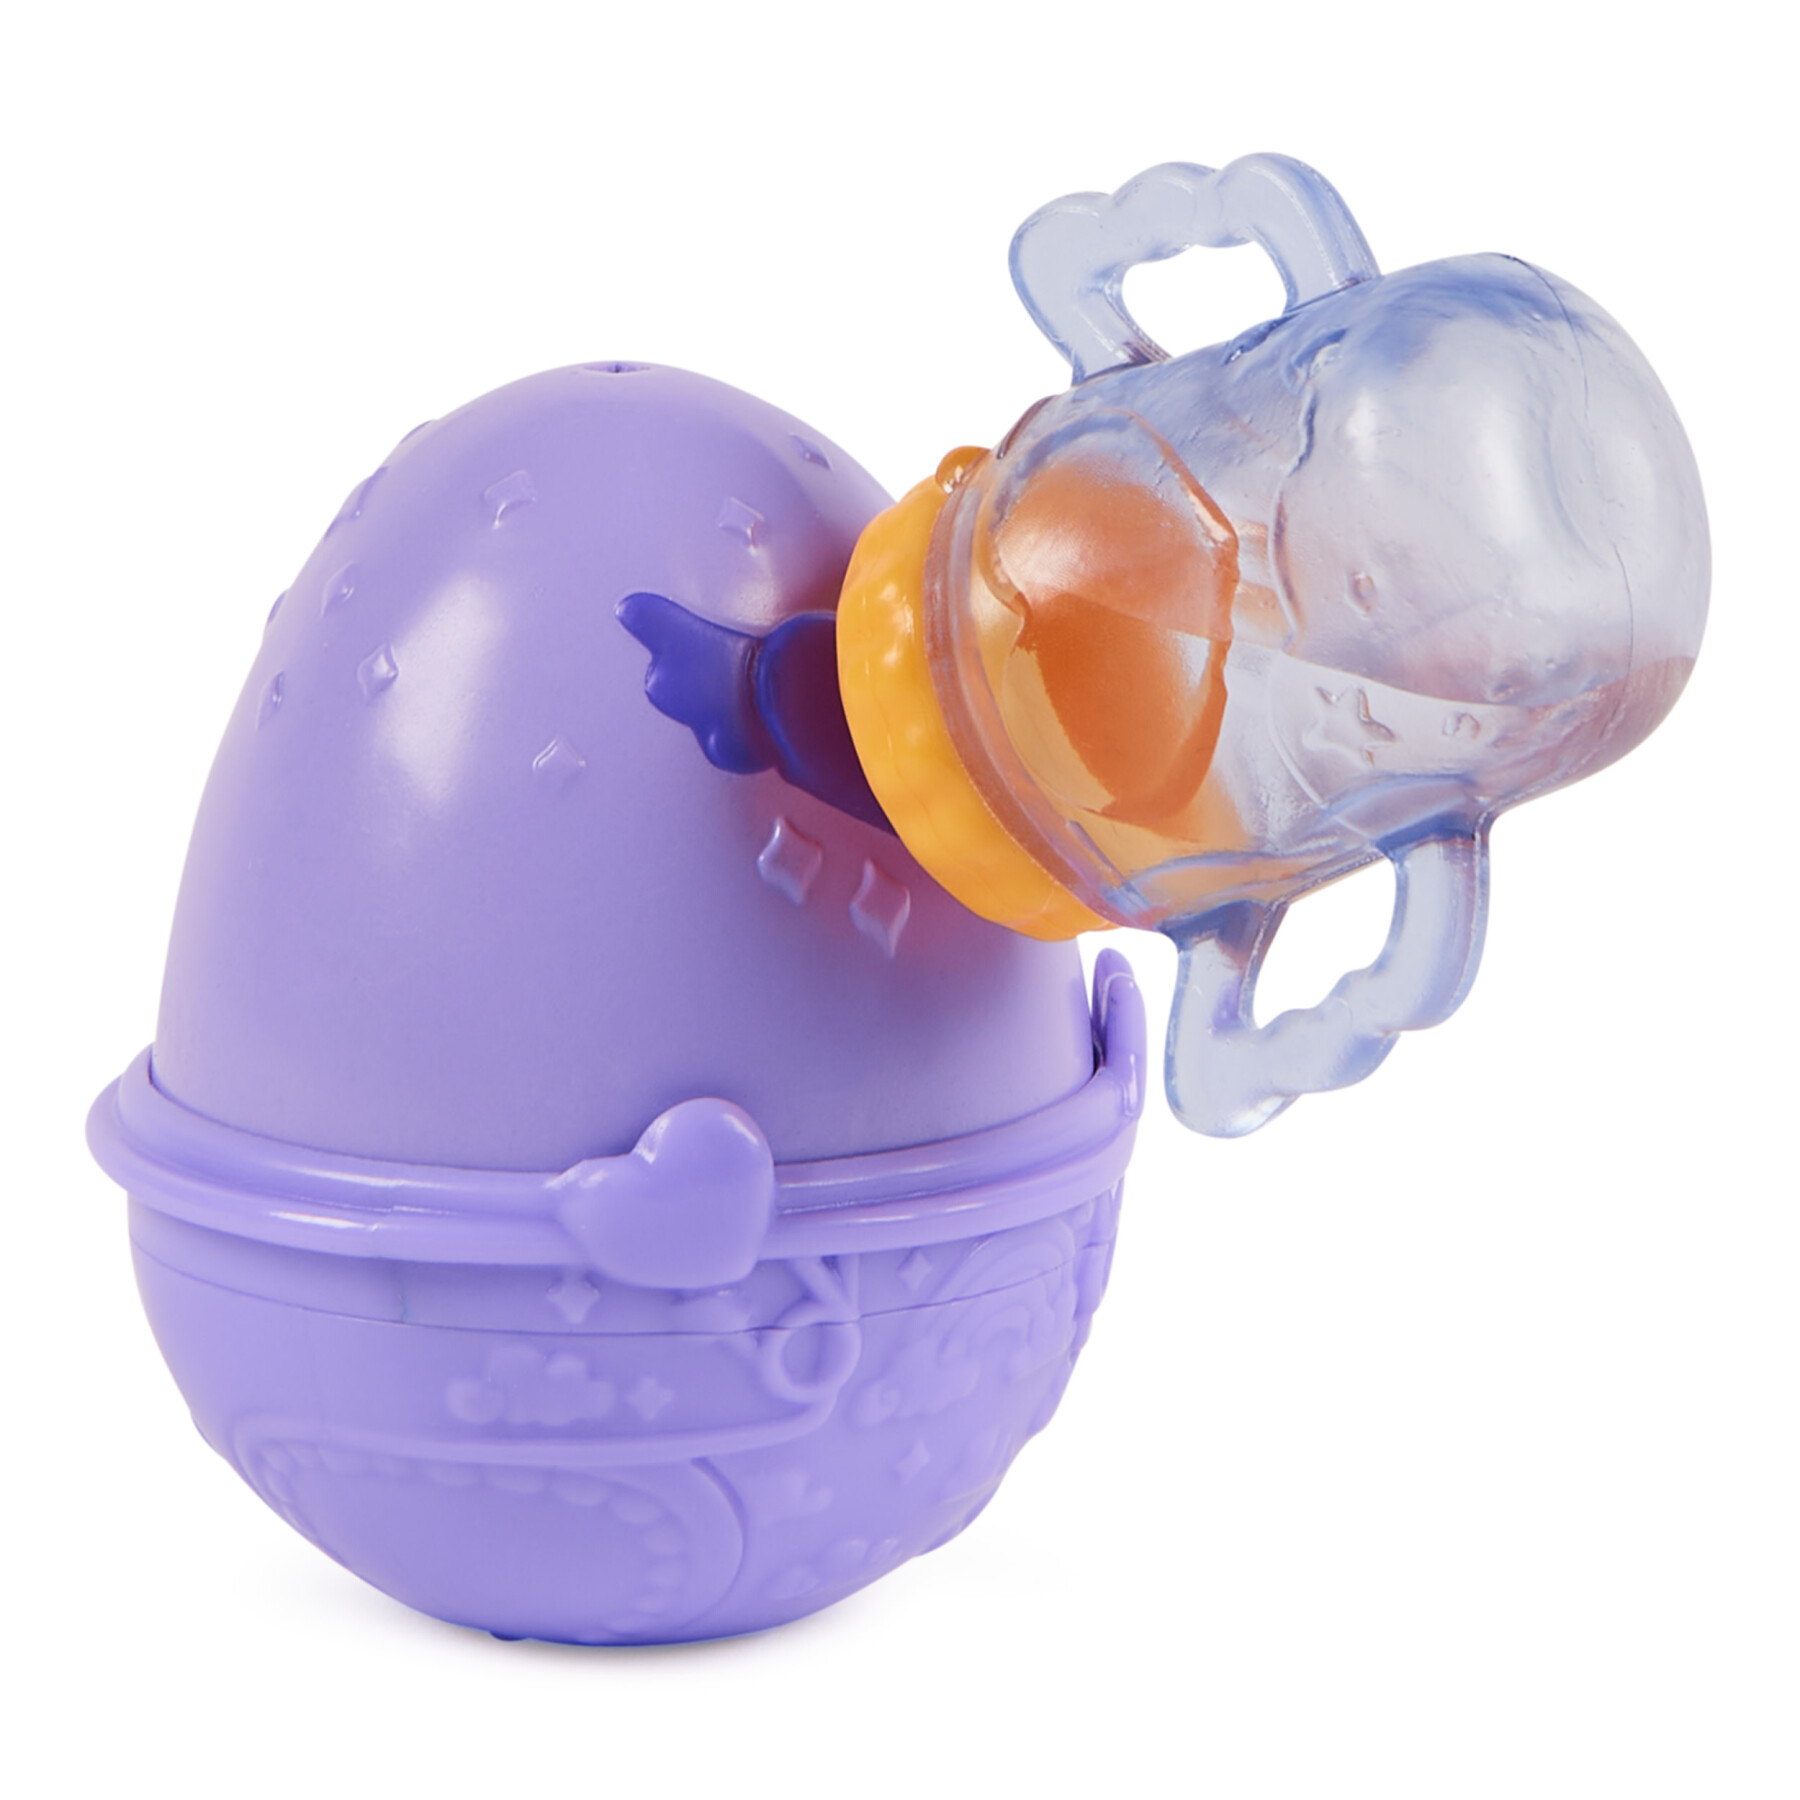 Hatchimals alive, confezione singola con mini personaggi in uova che si schiudono con l'acqua, giocattoli per bambine e bambini, 3+ anni - modelli assortiti - HATCHIMALS